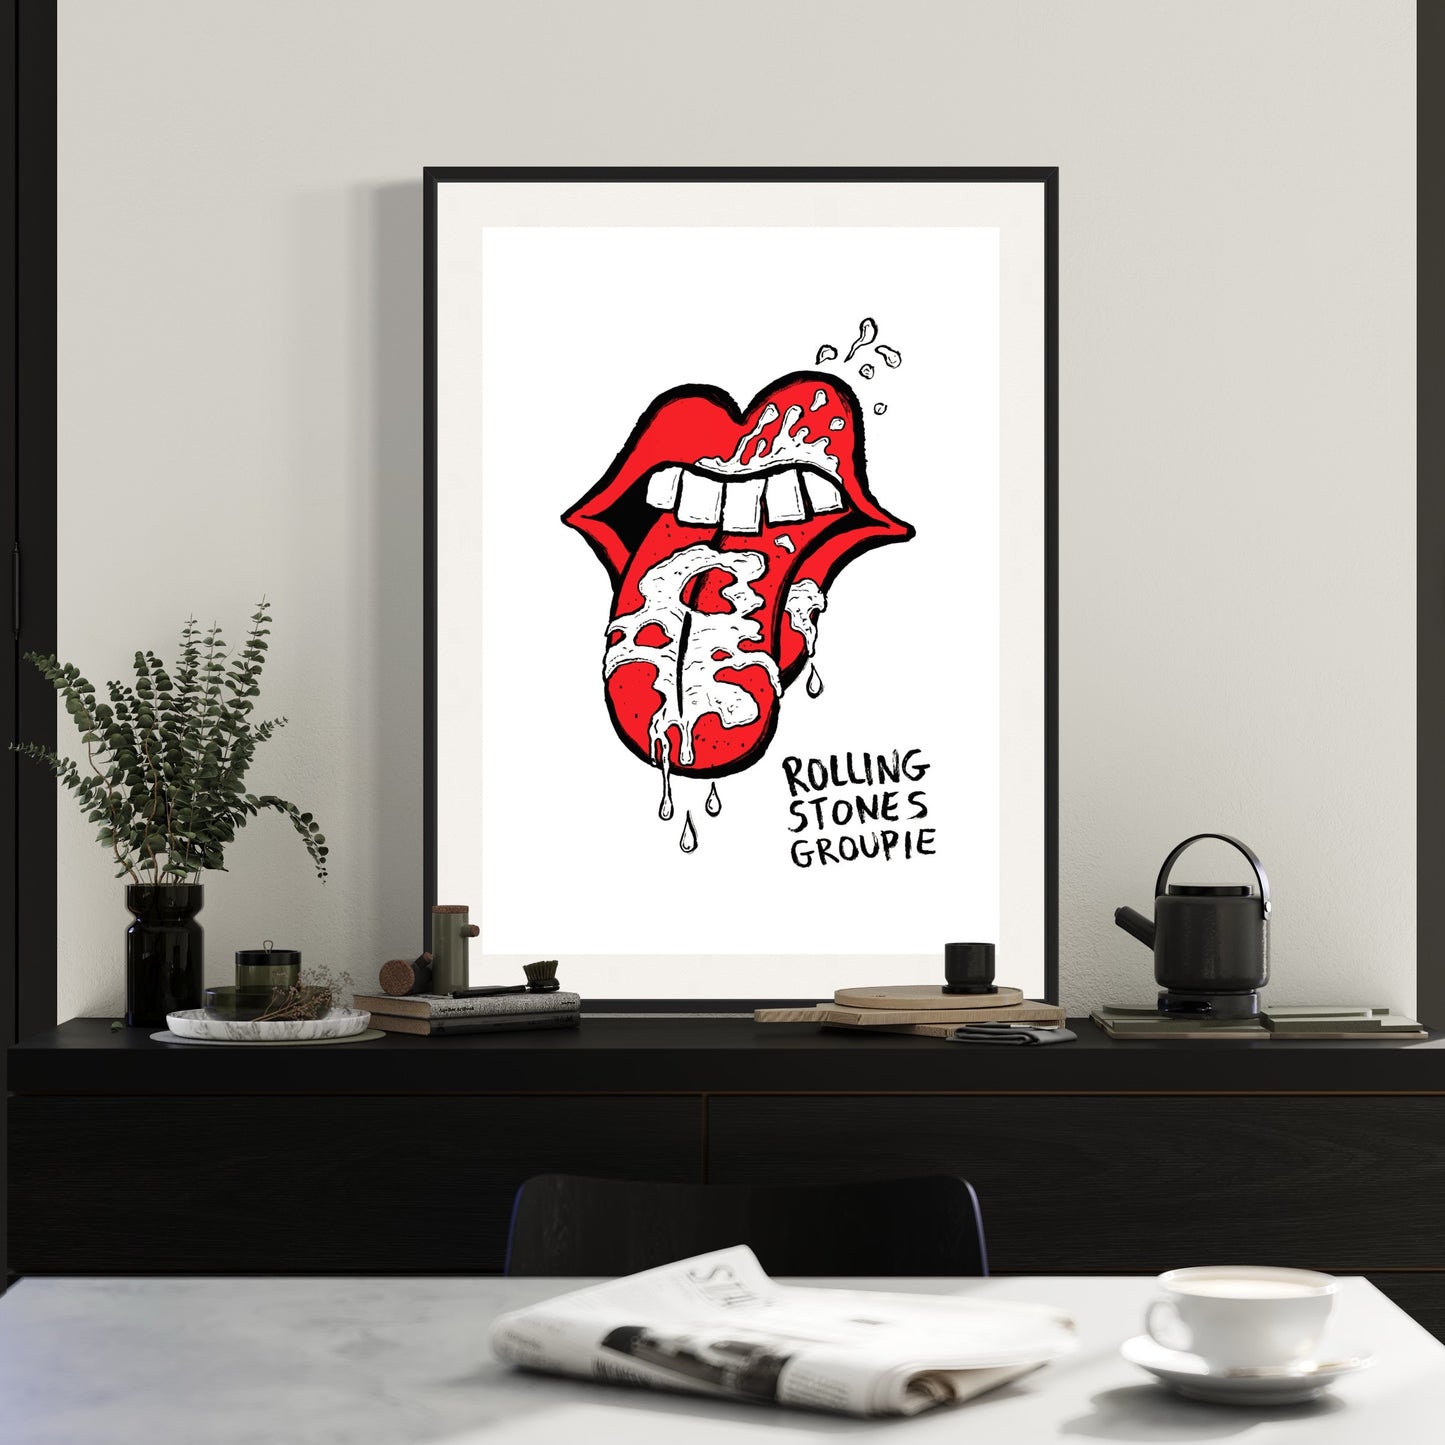 Rolling Stones - Groupie print